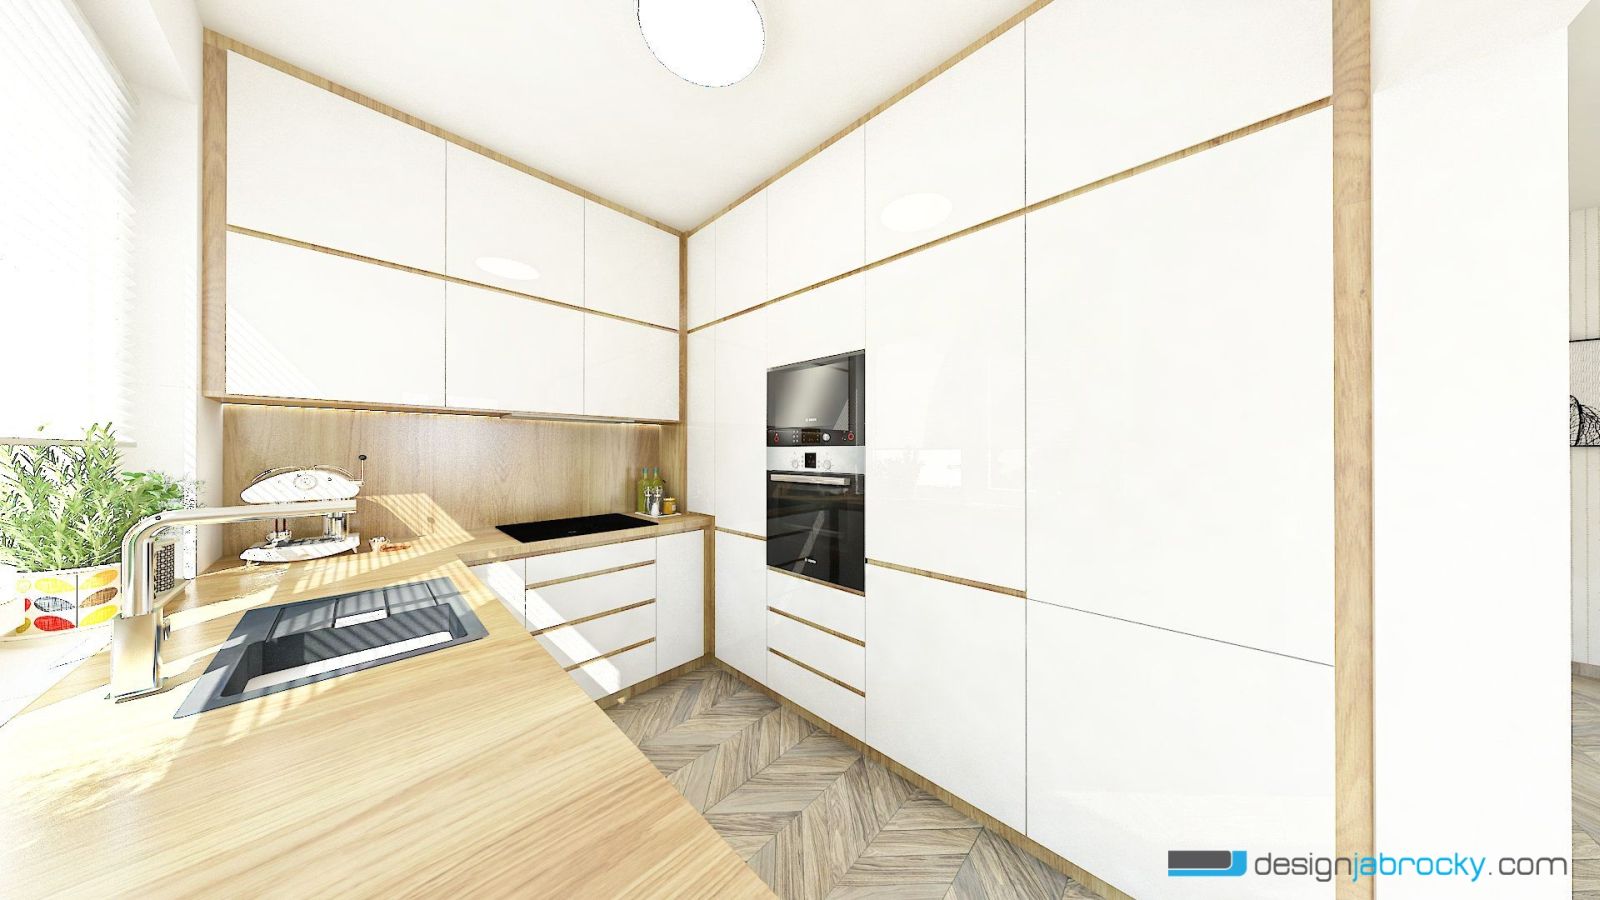 Biela kuchyňa Trenčín - minimalistický interiér